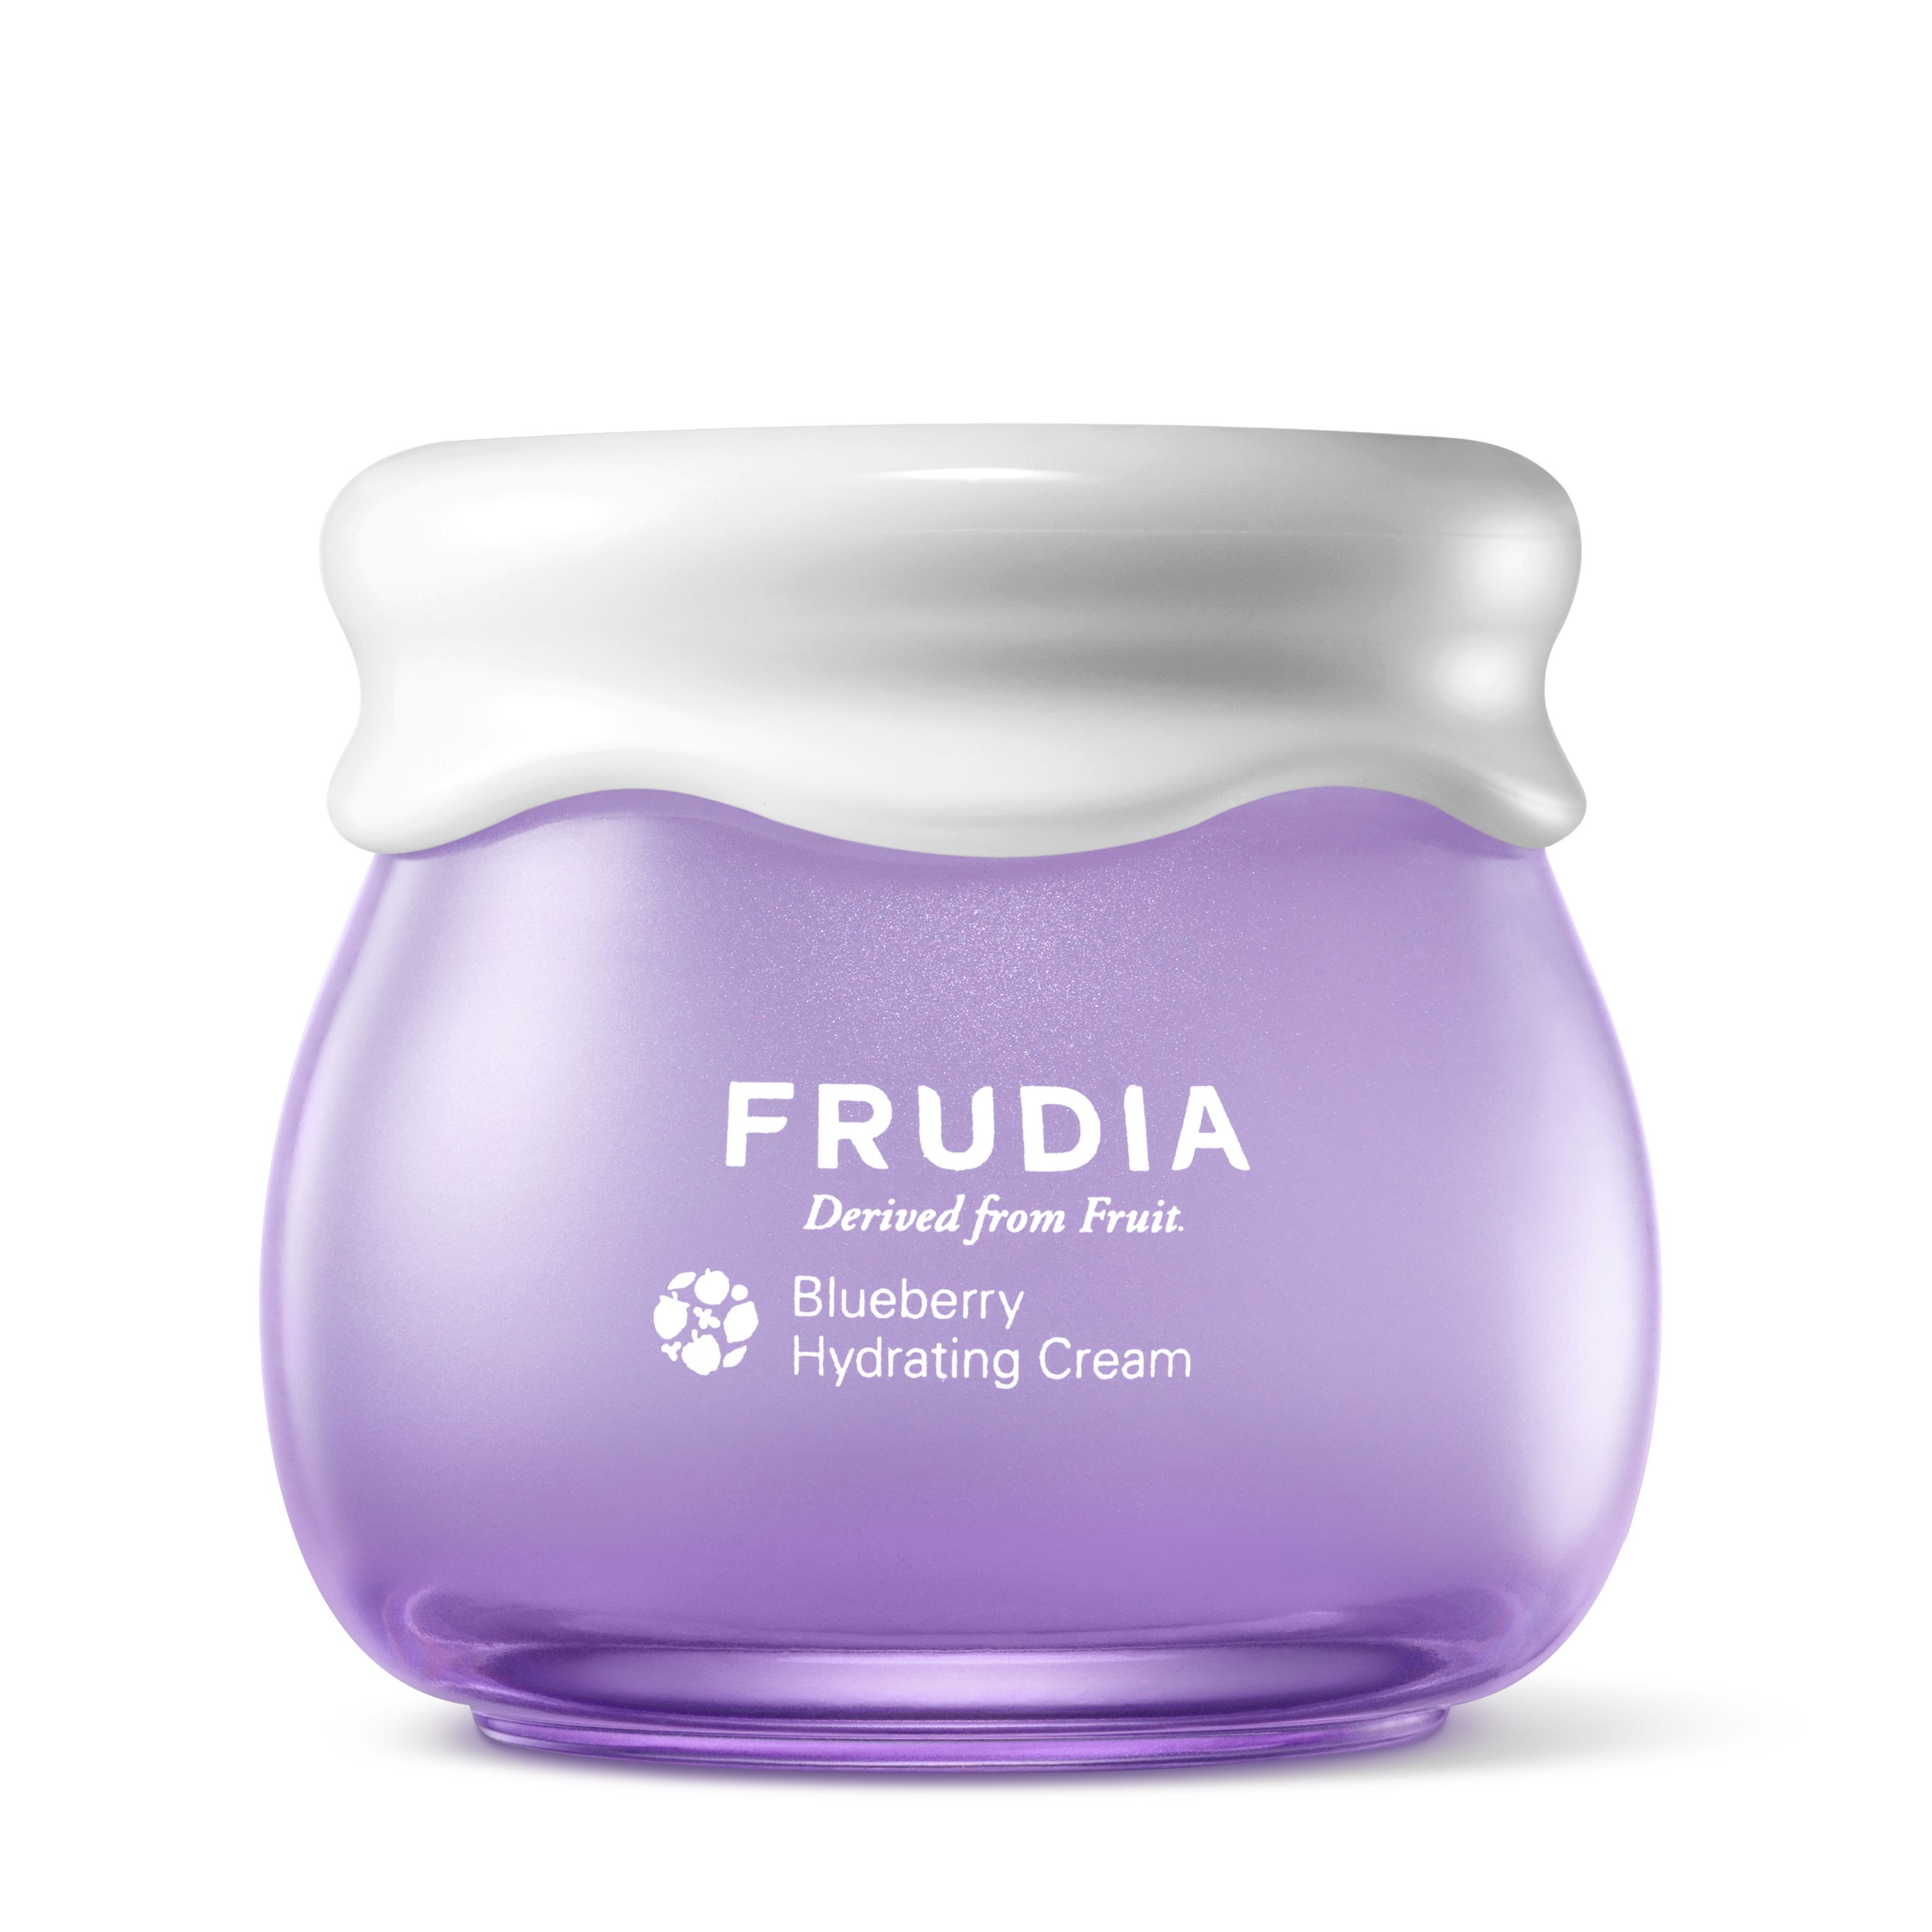 Крем для лица Frudia Blueberry Hydrating Cream 55 мл frudia сыворотка питательная с гранатом для лица 50 г